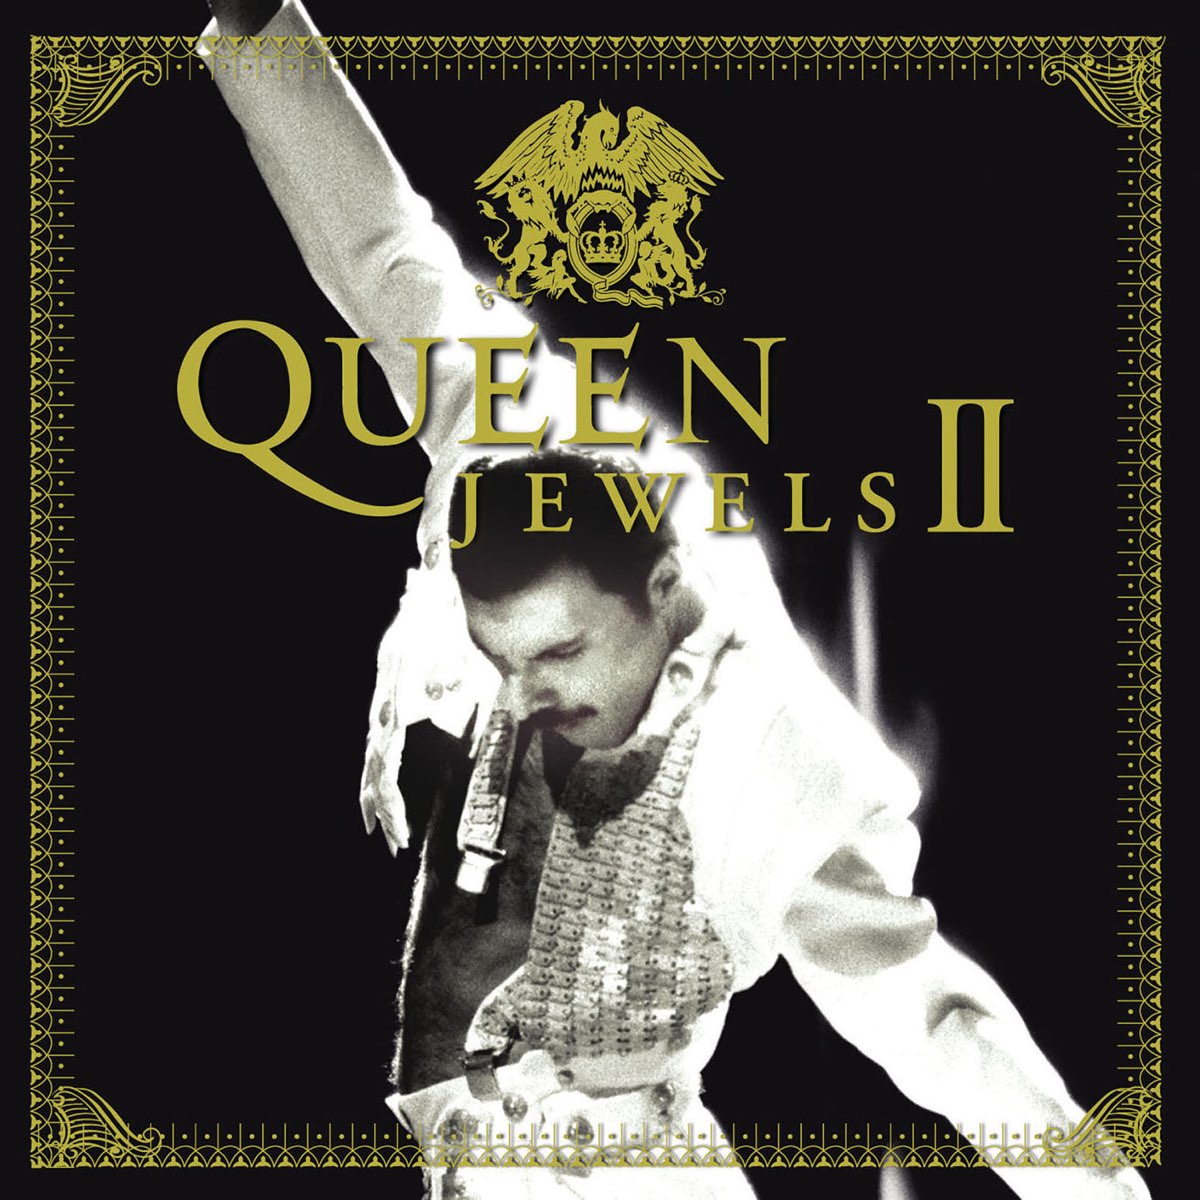 Queen Jewels II - クイーンのアルバム - Apple Music